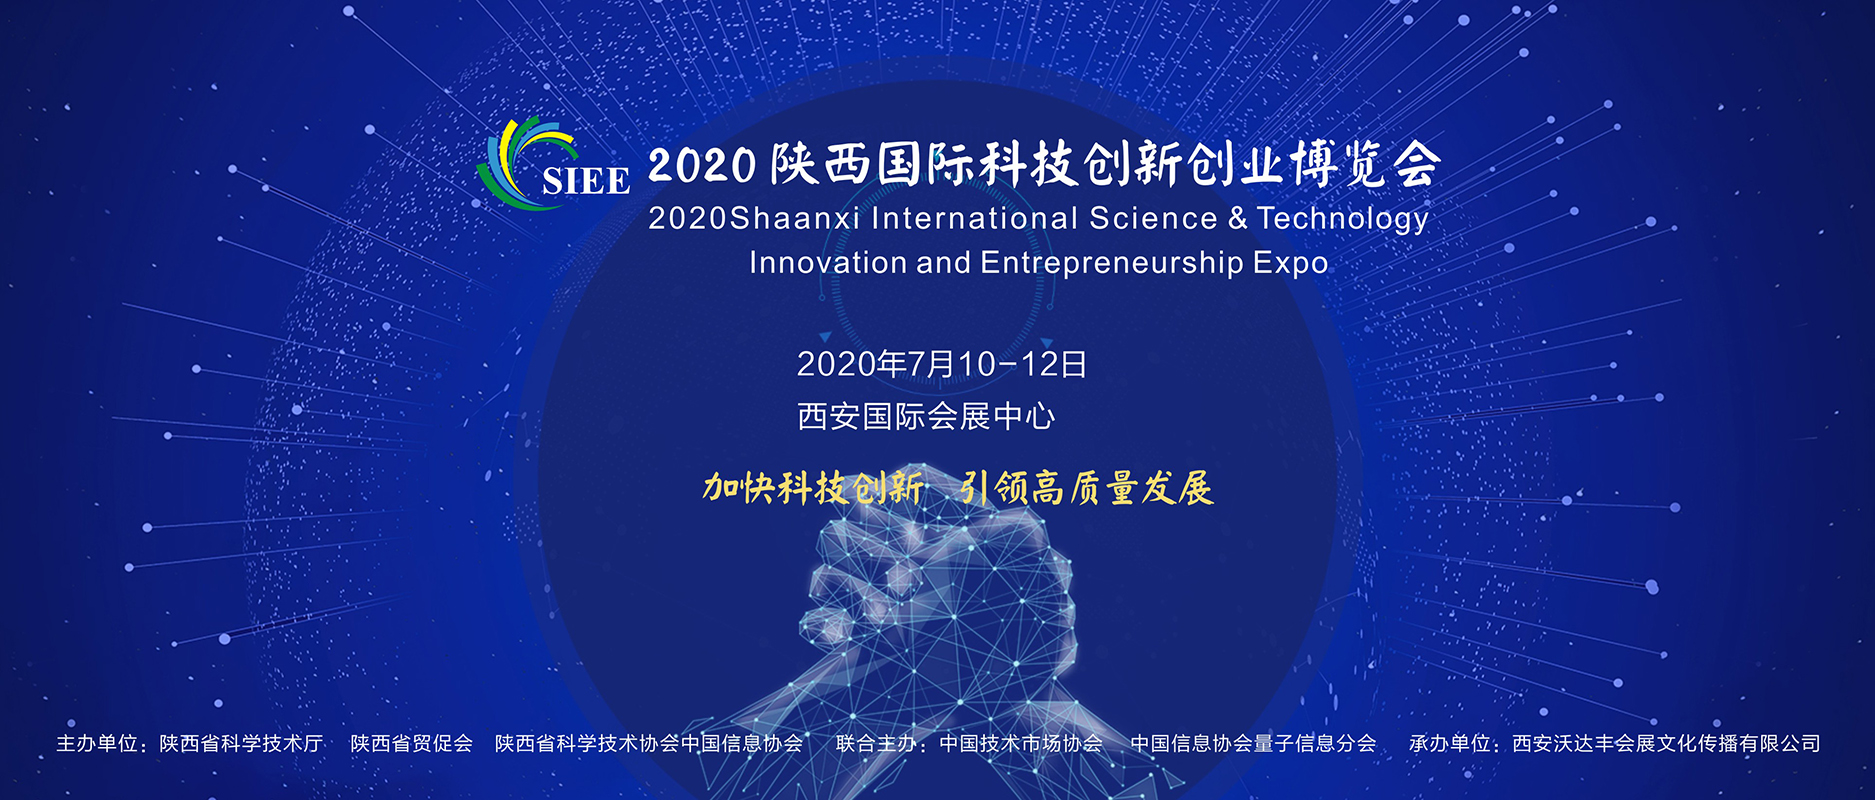 2020陕西国际科技创新创业博览会将于7月开幕